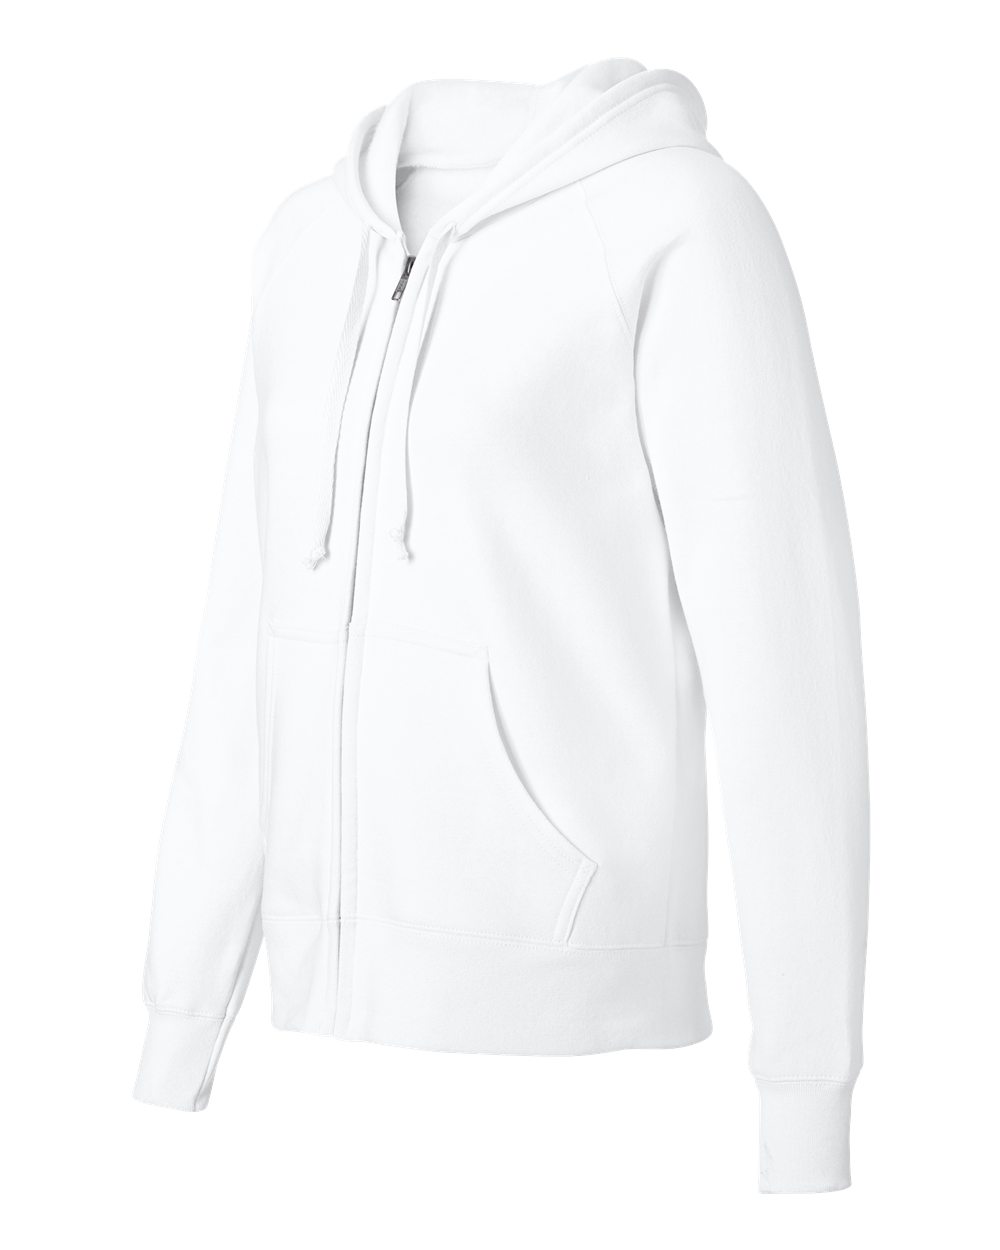 Hanes W280 - Ladies' Full-Zip ComfortBlend EcoSmart Hooded Sweatshirt